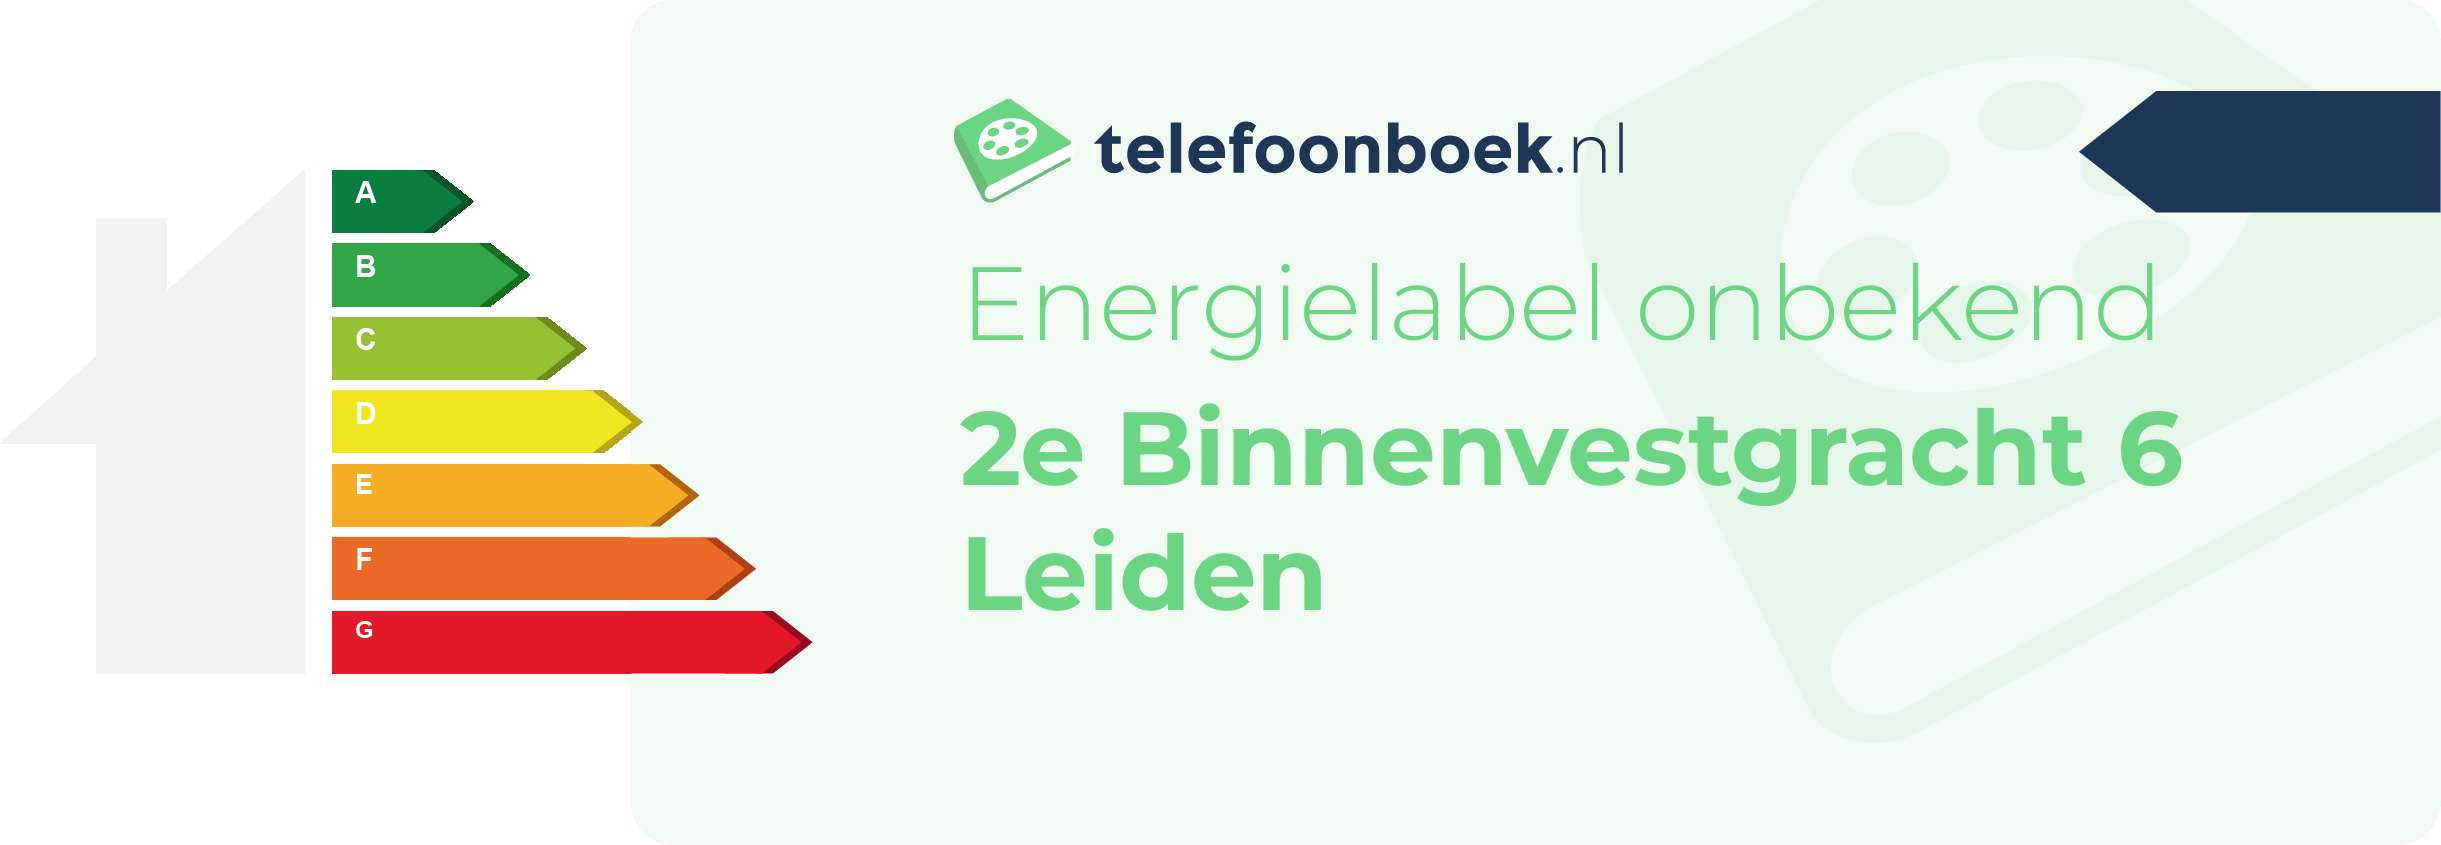 Energielabel 2e Binnenvestgracht 6 Leiden